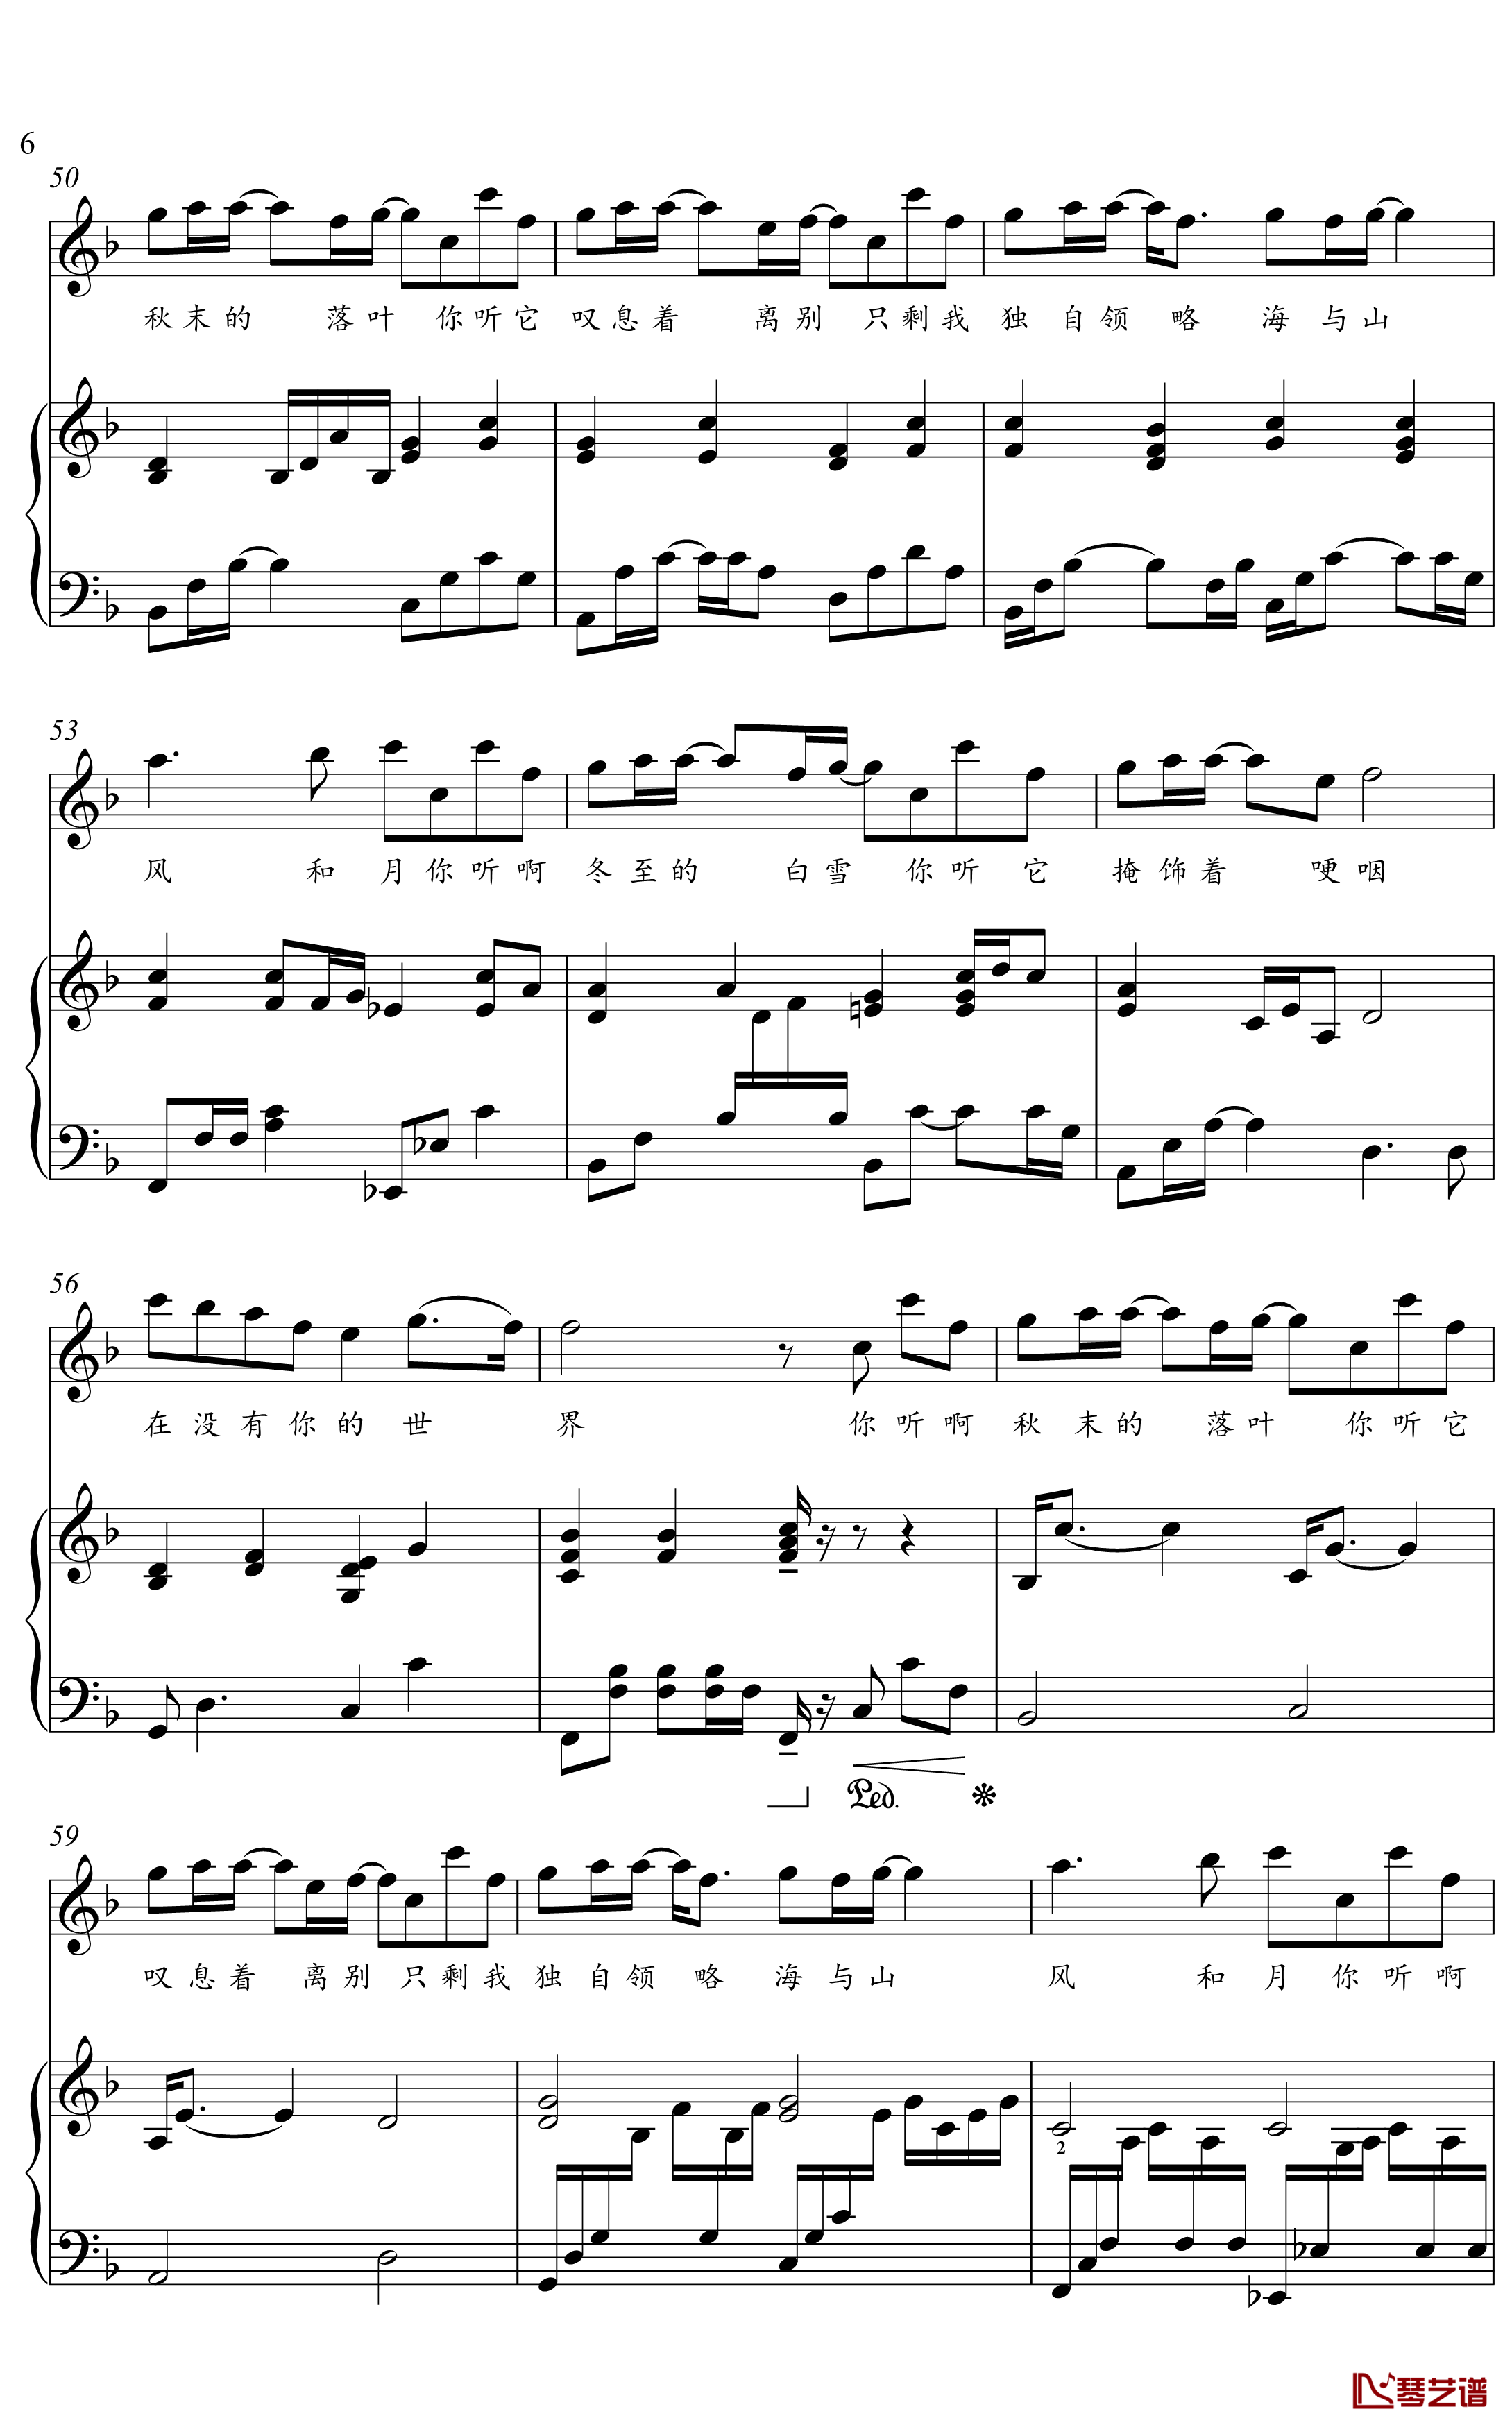 冬眠钢琴谱-金老师弹唱谱2003196